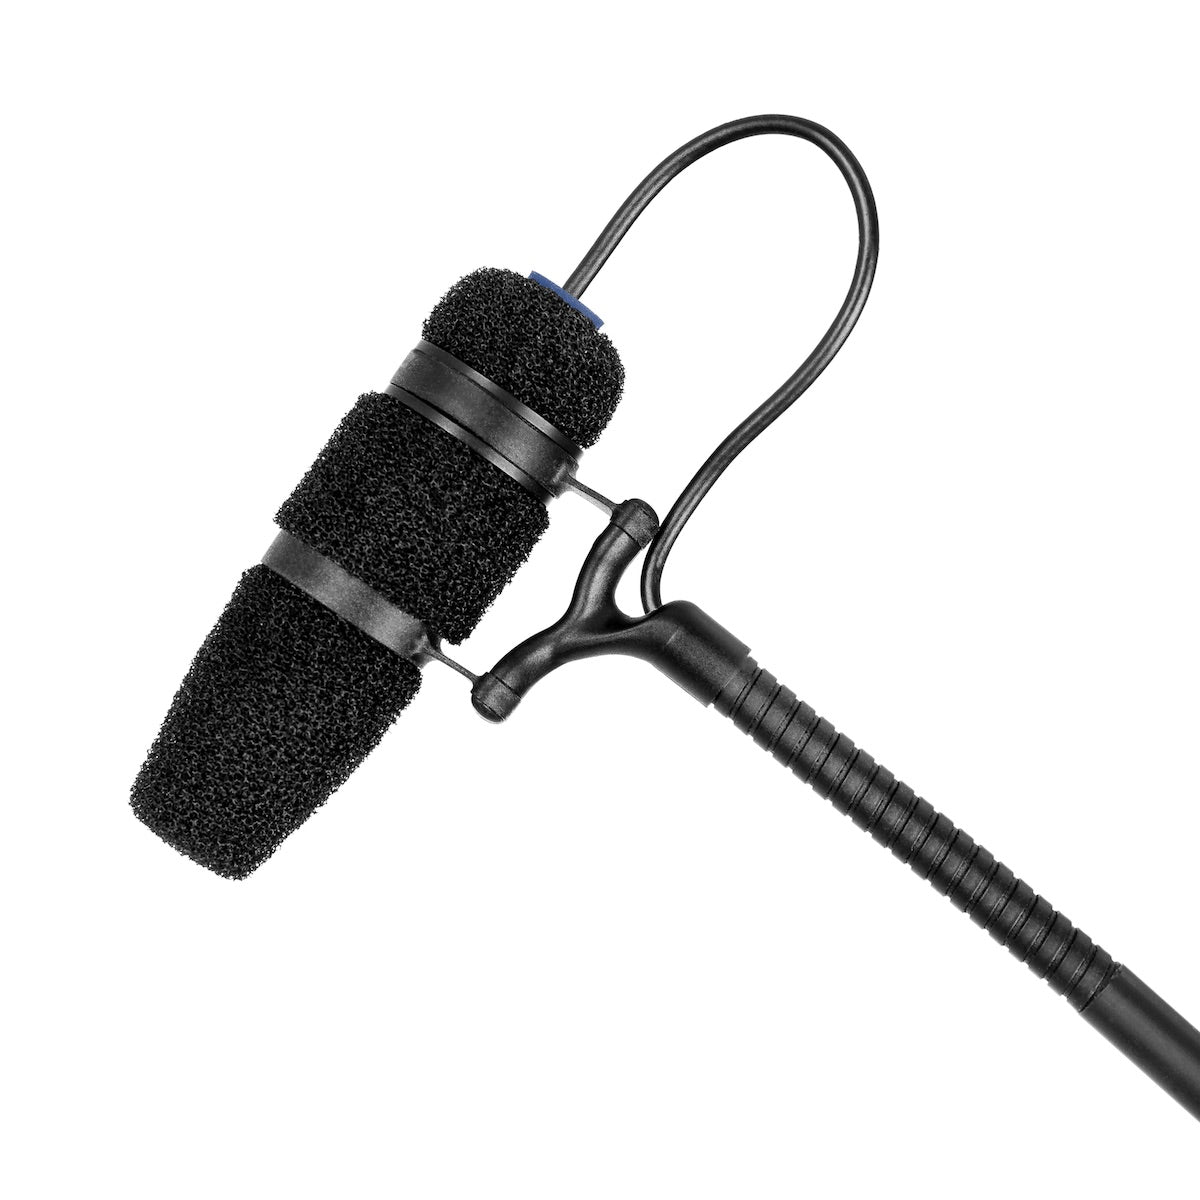 DPA 4097 CORE Supercardioid Choir Microphone, closeup